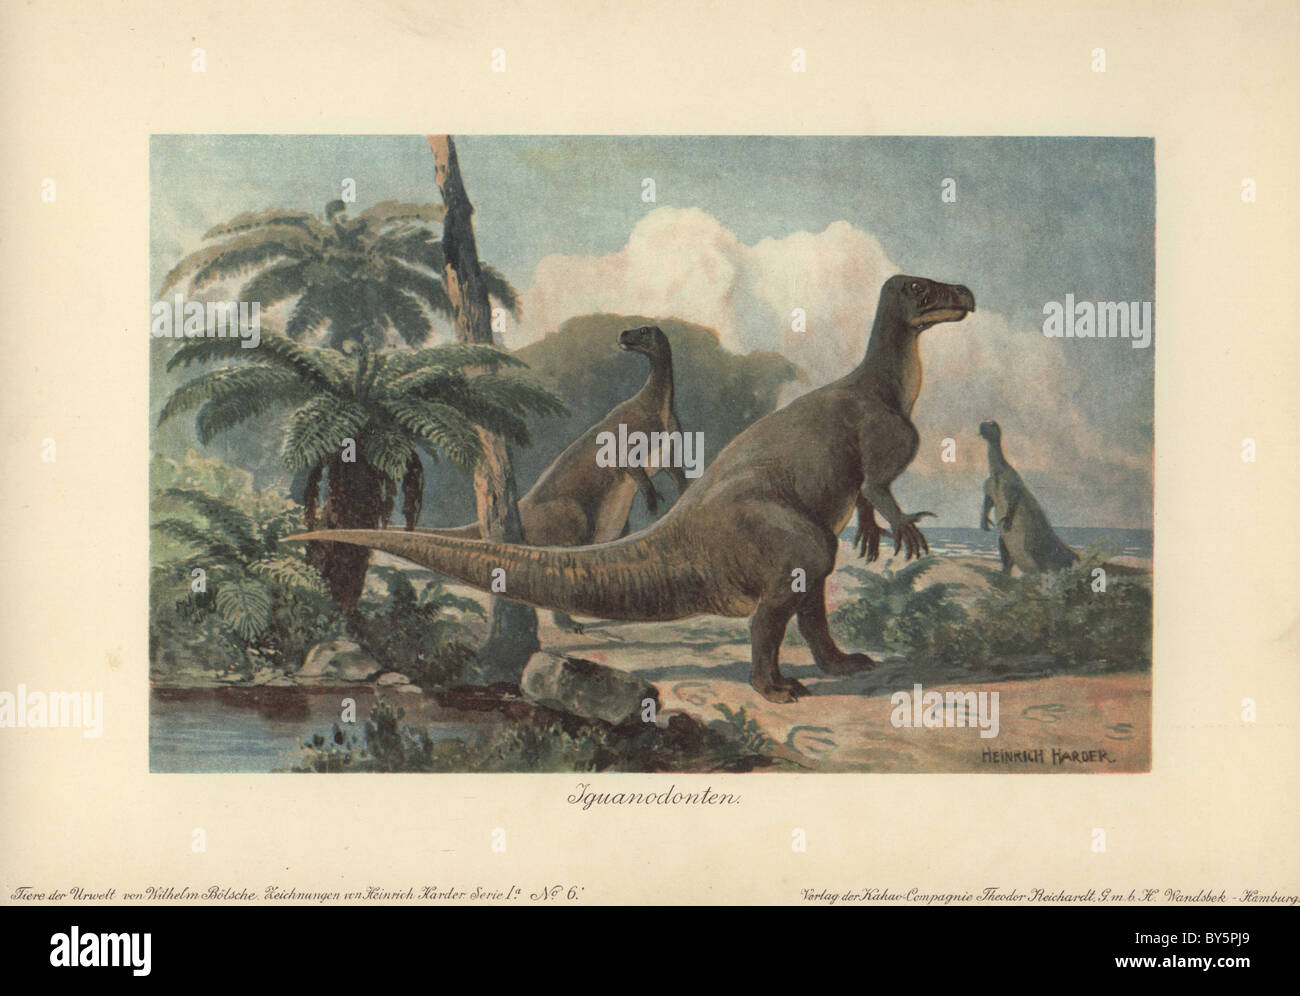 Iguanodons erano dinosauri erbivori che ha vissuto a partire dalla metà del giurassico al tardo Cretaceo era. Foto Stock